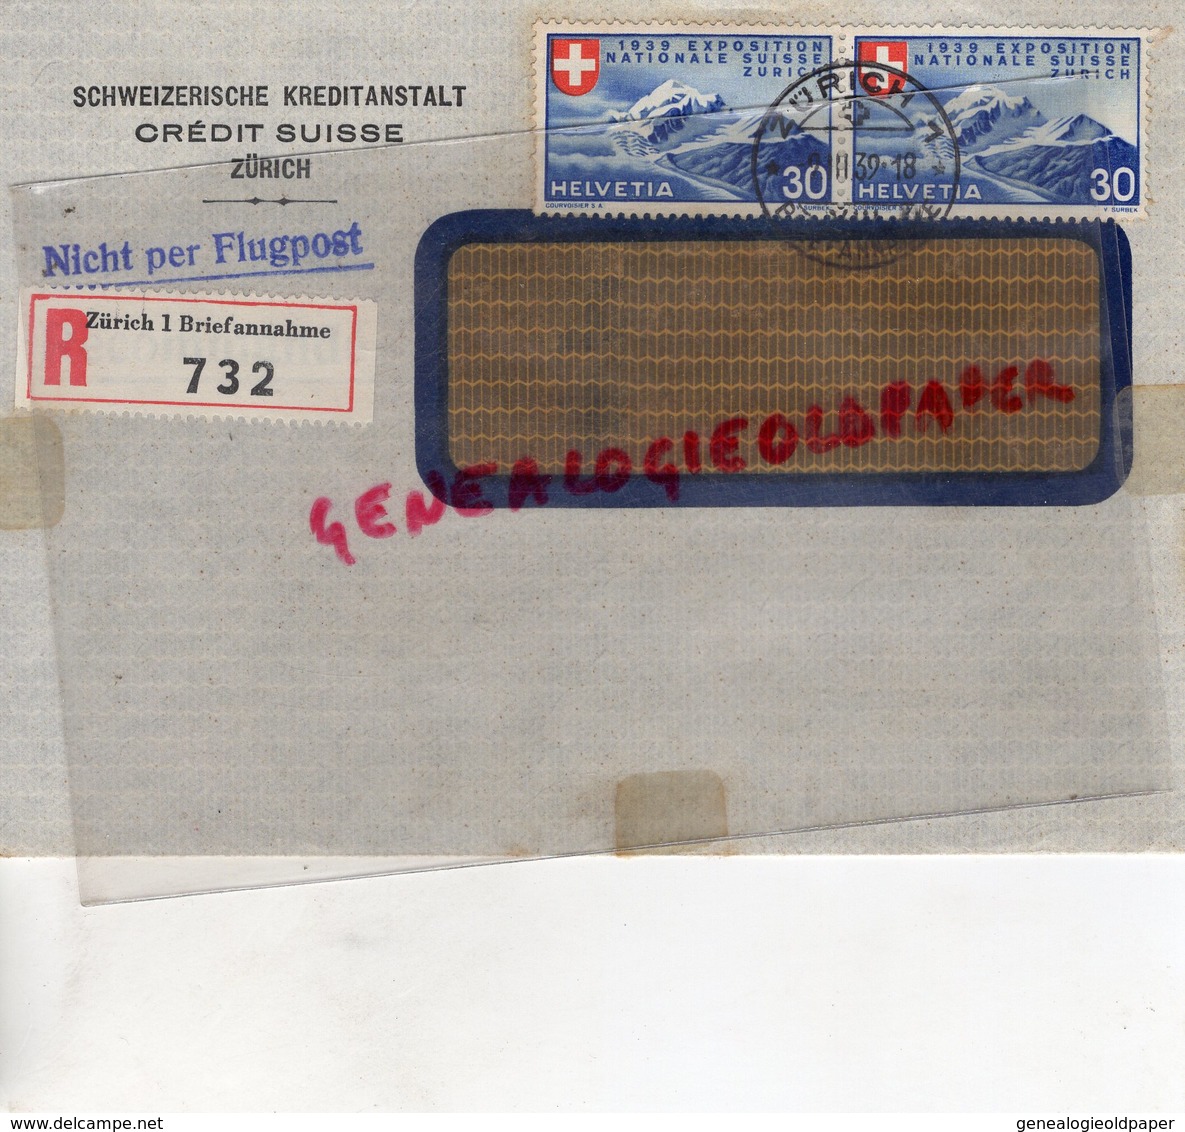 SUISSE - ZURICH- RARE ENVELOPPE SCHWEIZERISCHE KREDITANSTALT- CREDIT SUISSE -1939- NICHT PER FLUGPOST-SAINT JUNIEN 87 - Svizzera